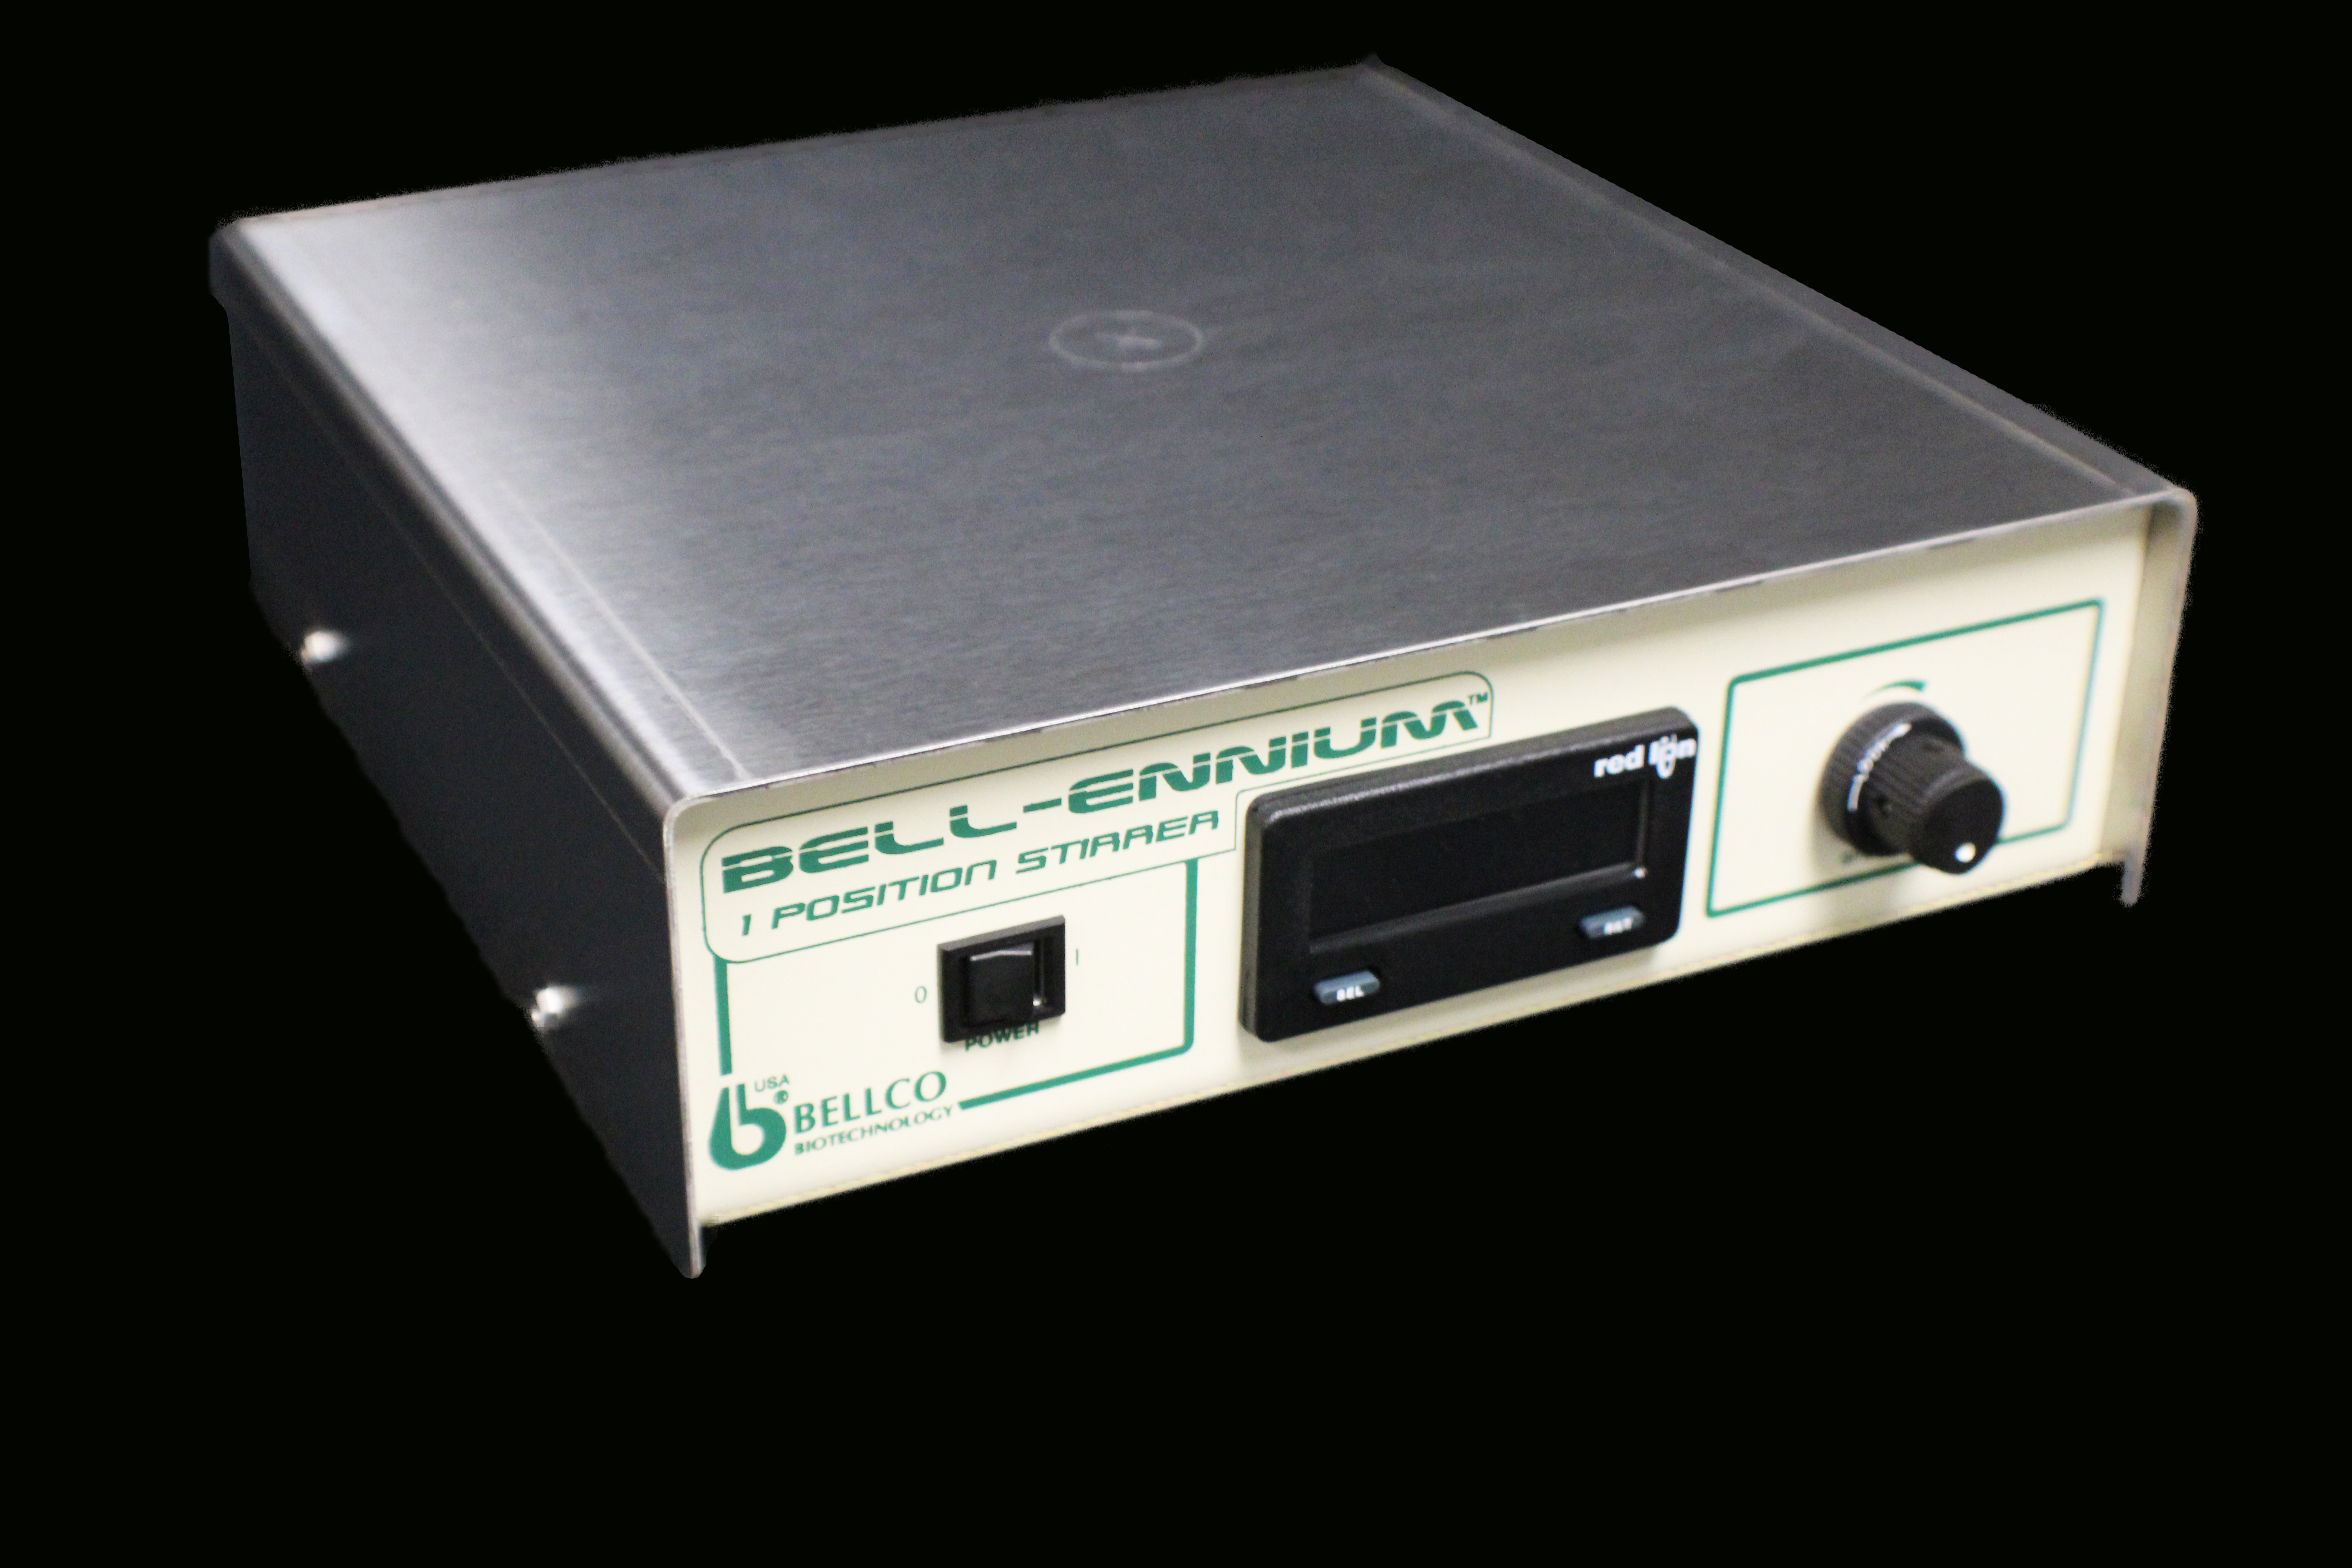 Bell-ennium Digital Magnetic Stirrer 1 Postion SKU:7785-D1208